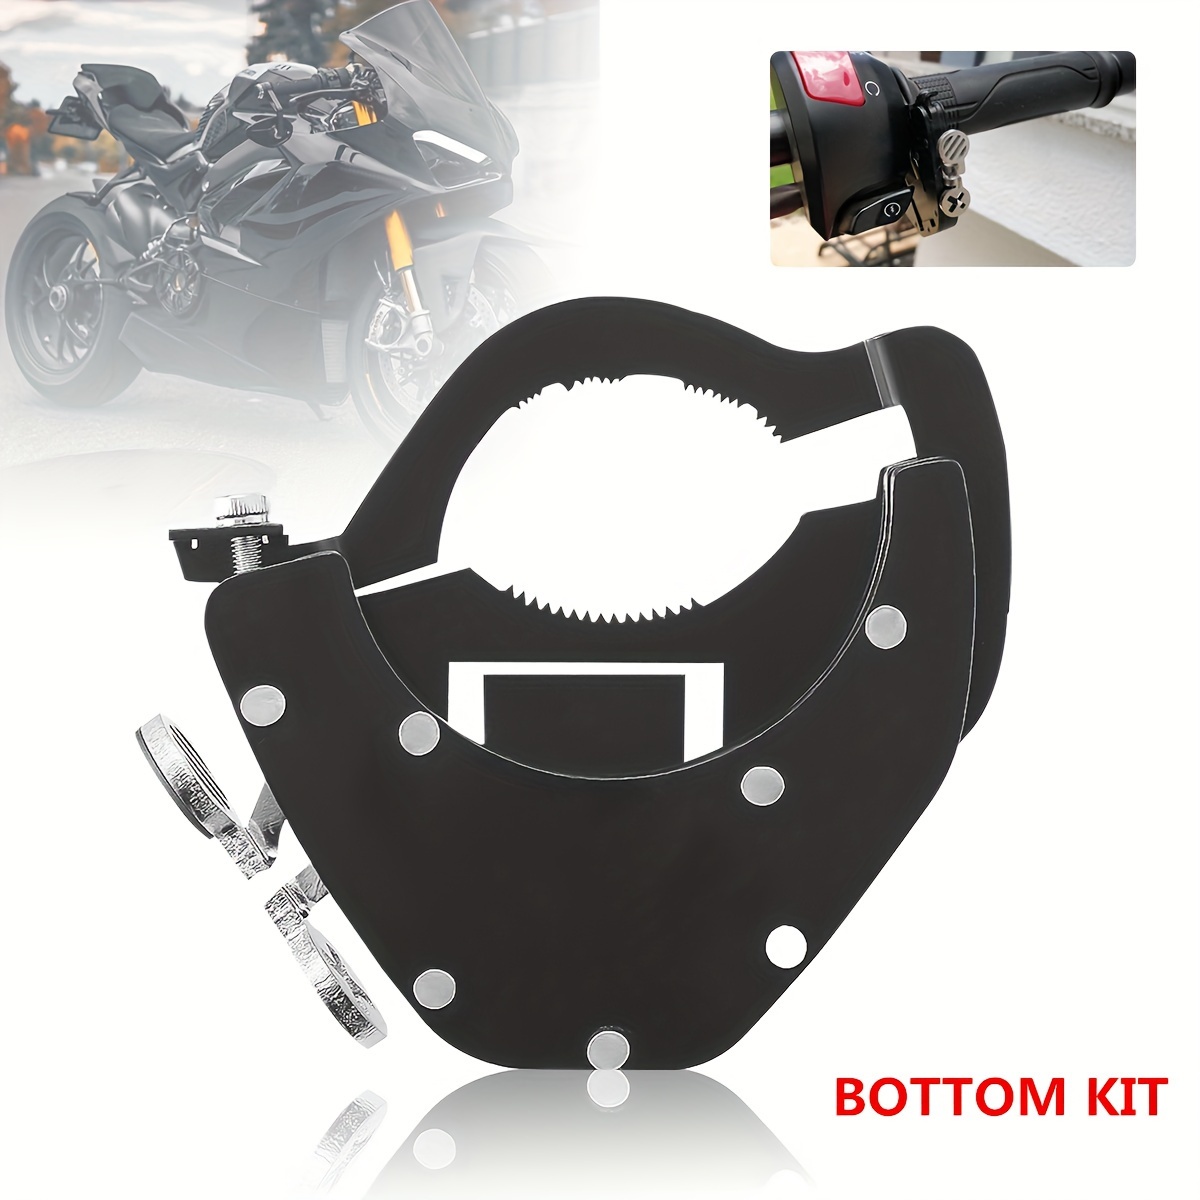 

Universal Motorcycle Cruise Control Throttle Assist Motorbike Handlebar Lock Bottom Kit For For For For Honda For Kawasaki